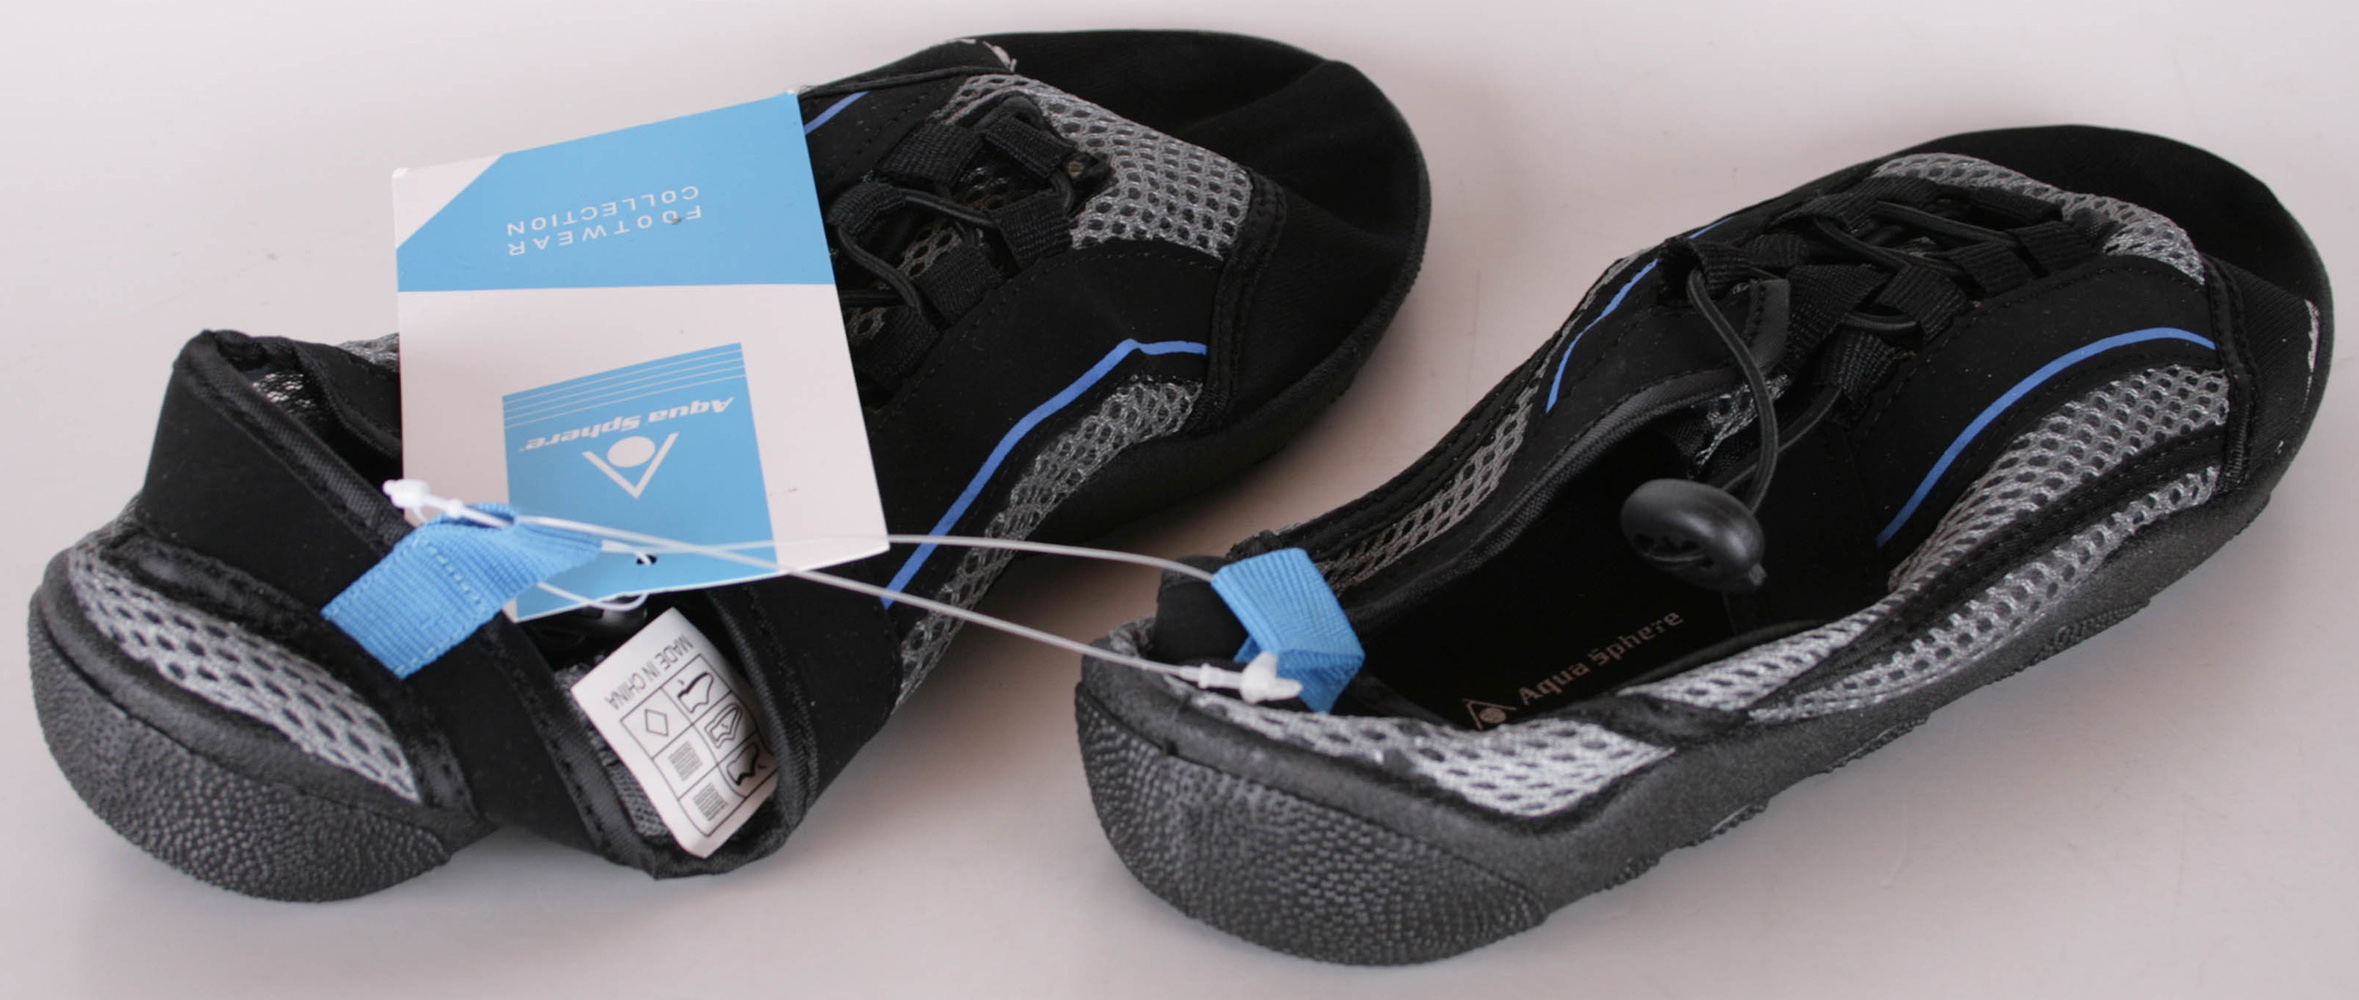 AQUA SPHERE LAGUNA chaussures de sports nautiques unisexes / chaussures de bain 36 gris / bleu